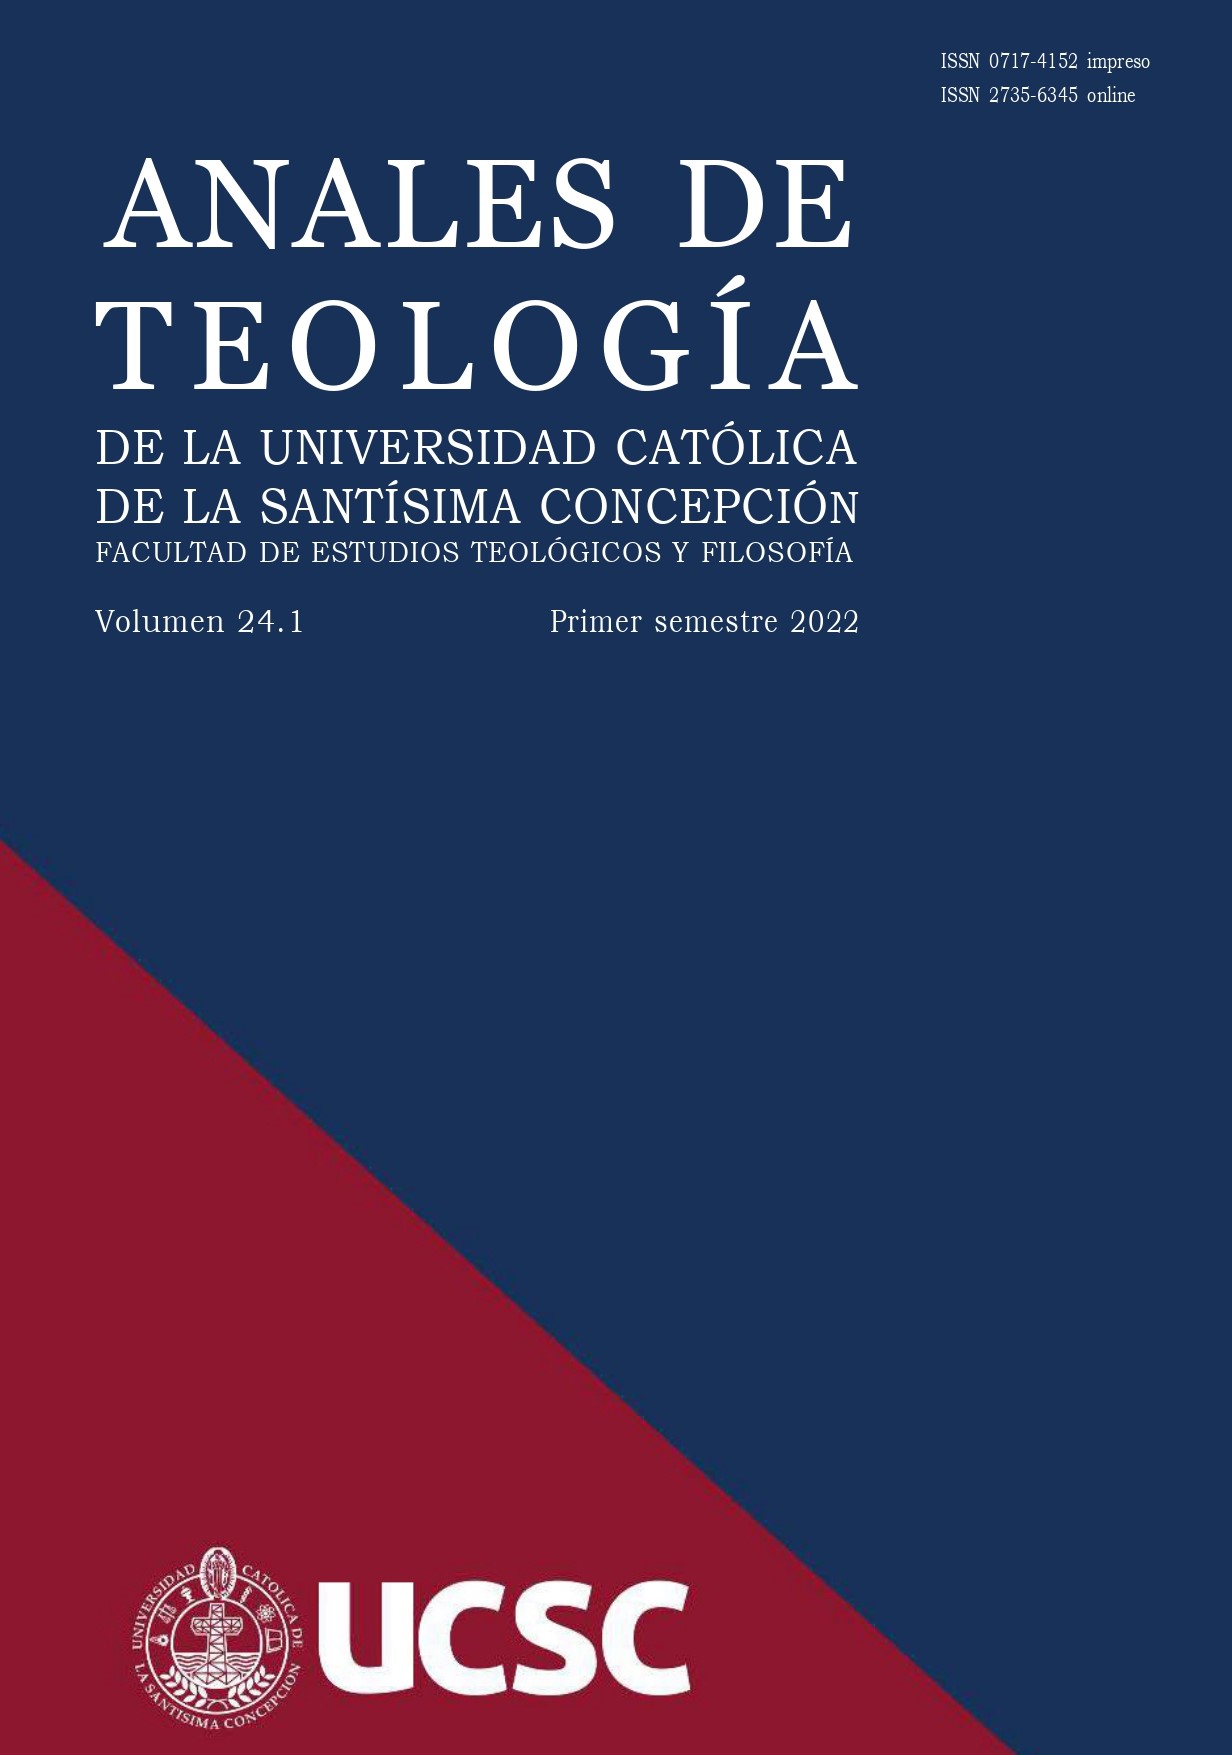 					Ver Vol. 19 Núm. 1 (2017): Anales de Teología | Enero - Junio 2017
				